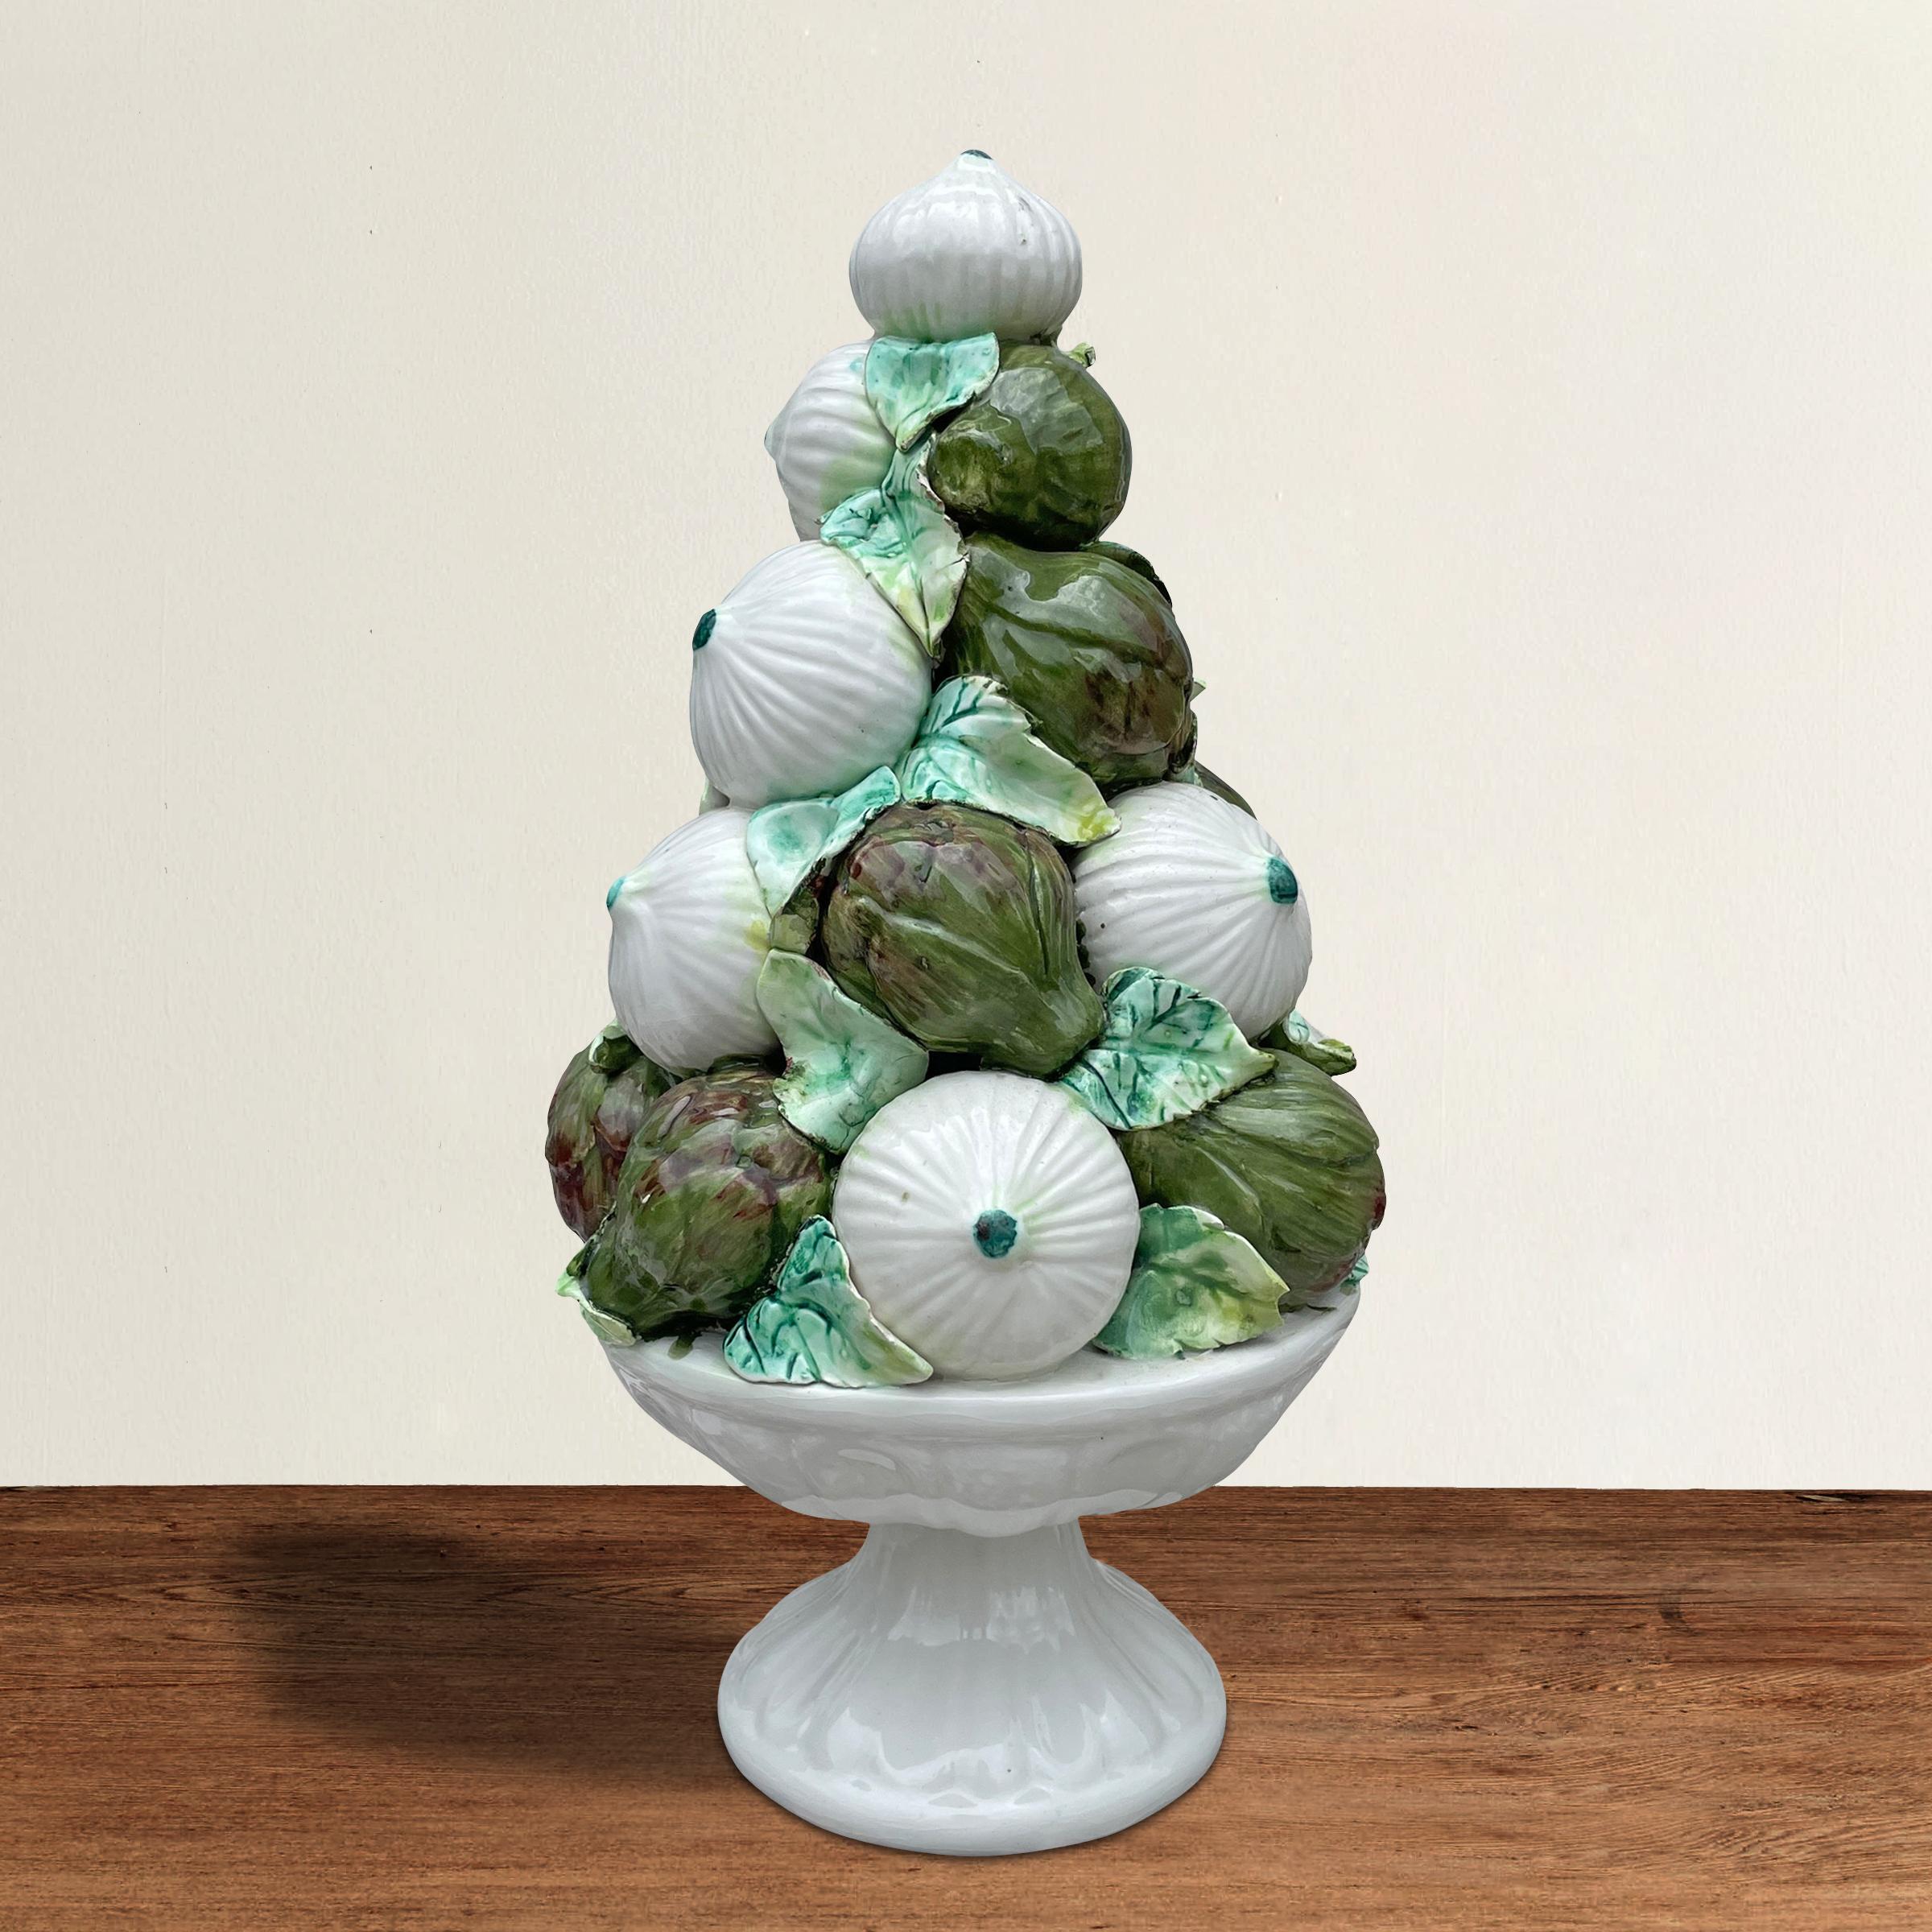 Une charmante sculpture vintage en porcelaine italienne représentant un groupe d'oignons et d'artichauts empilés et reposant sur une base en forme de tazza.